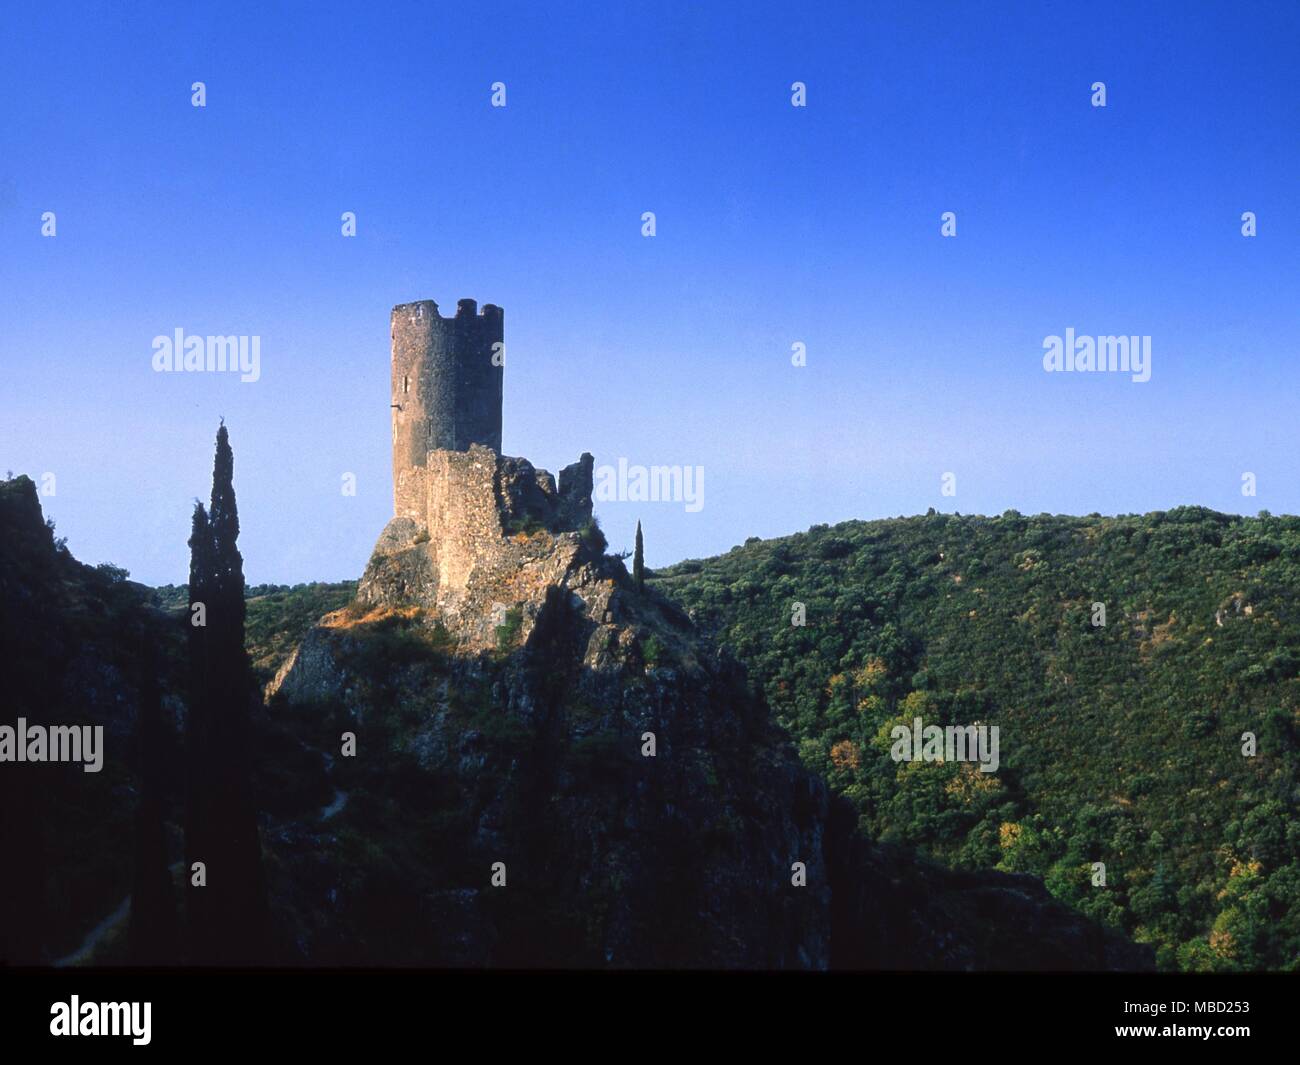 Bleibt einer der vier Berge Festungen von den Tempelrittern im 13. Jahrhundert belegt. Stockfoto